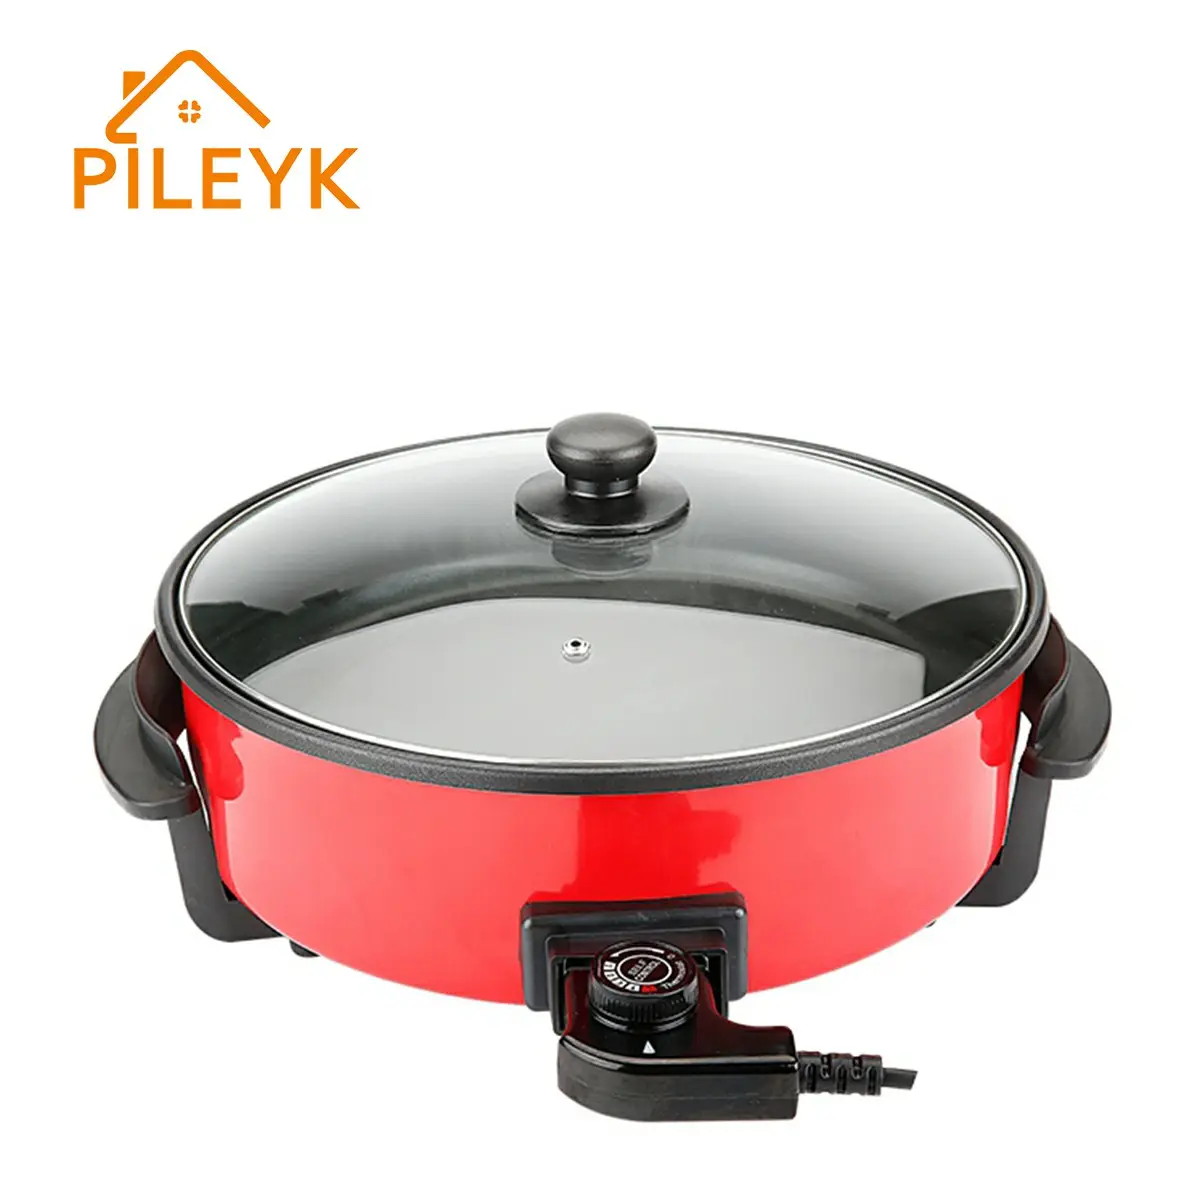 Vaso de sopa elétrico, frigideira elétrica wok com preço de fábrica de temperatura 4-9cm depthnes mini pizza panela para cozinhar